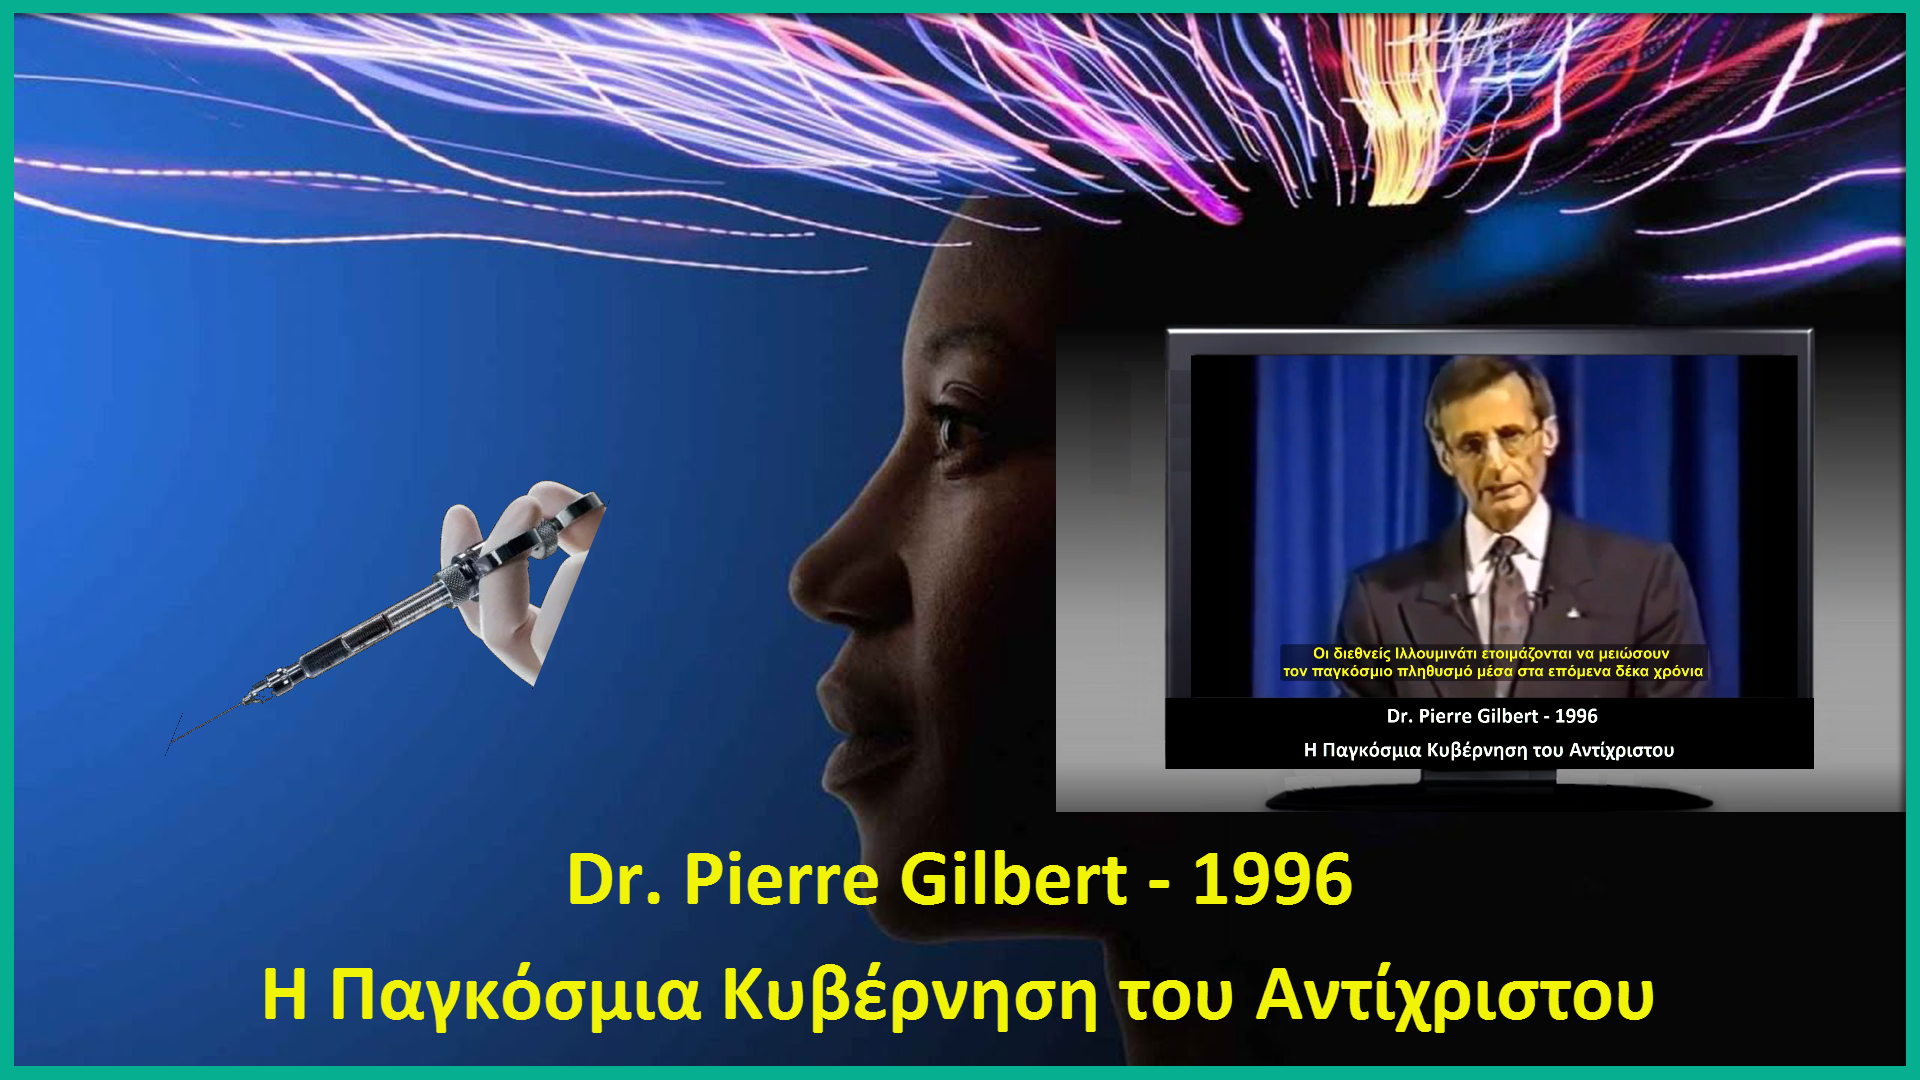 Τα μακάβρια σχέδια των ΣΑΤΑΝΙΣΤΩΝ ΣΙΩΝΙΣΤΩΝ. Dr. Pierre Gilbert - 1996 - H Παγκόσμια Κυβέρνηση του Αντίχριστου. Το ΣΟΚαριστικό βίντεο που πρέπει να δουν ΟΛΟΙ